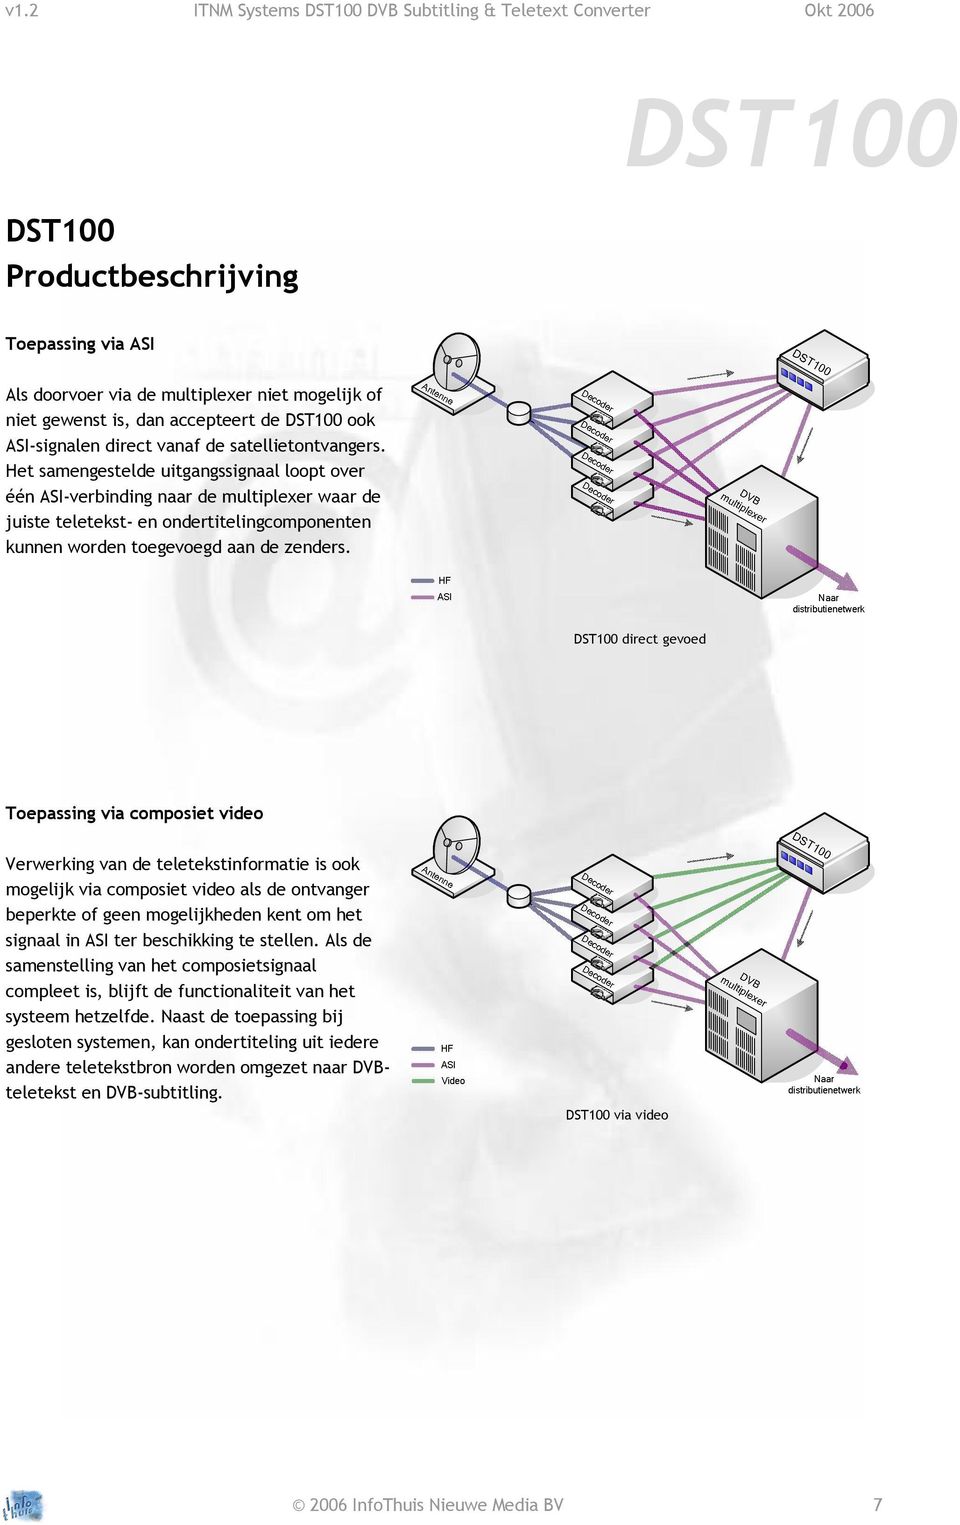 Het samengestelde uitgangssignaal loopt over één ASI-verbinding naar de multiplexer waar de juiste teletekst- en ondertitelingcomponenten kunnen worden toegevoegd aan de zenders.